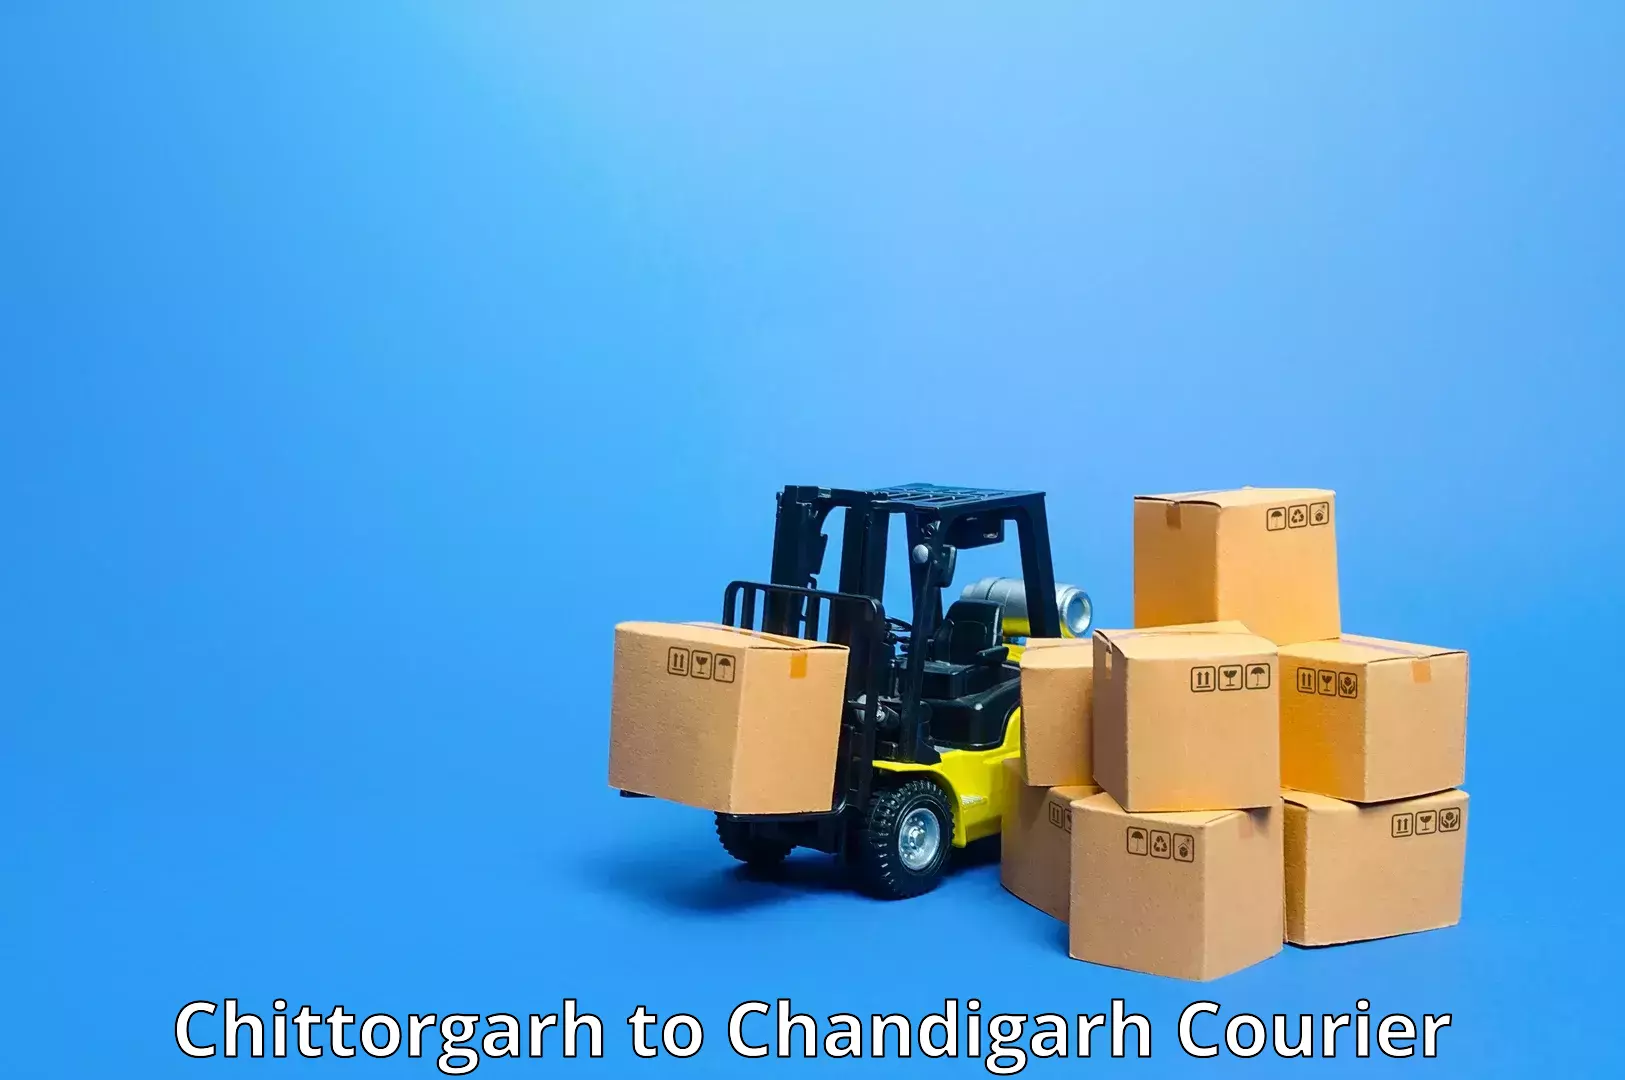 Doorstep delivery service Chittorgarh to Chandigarh